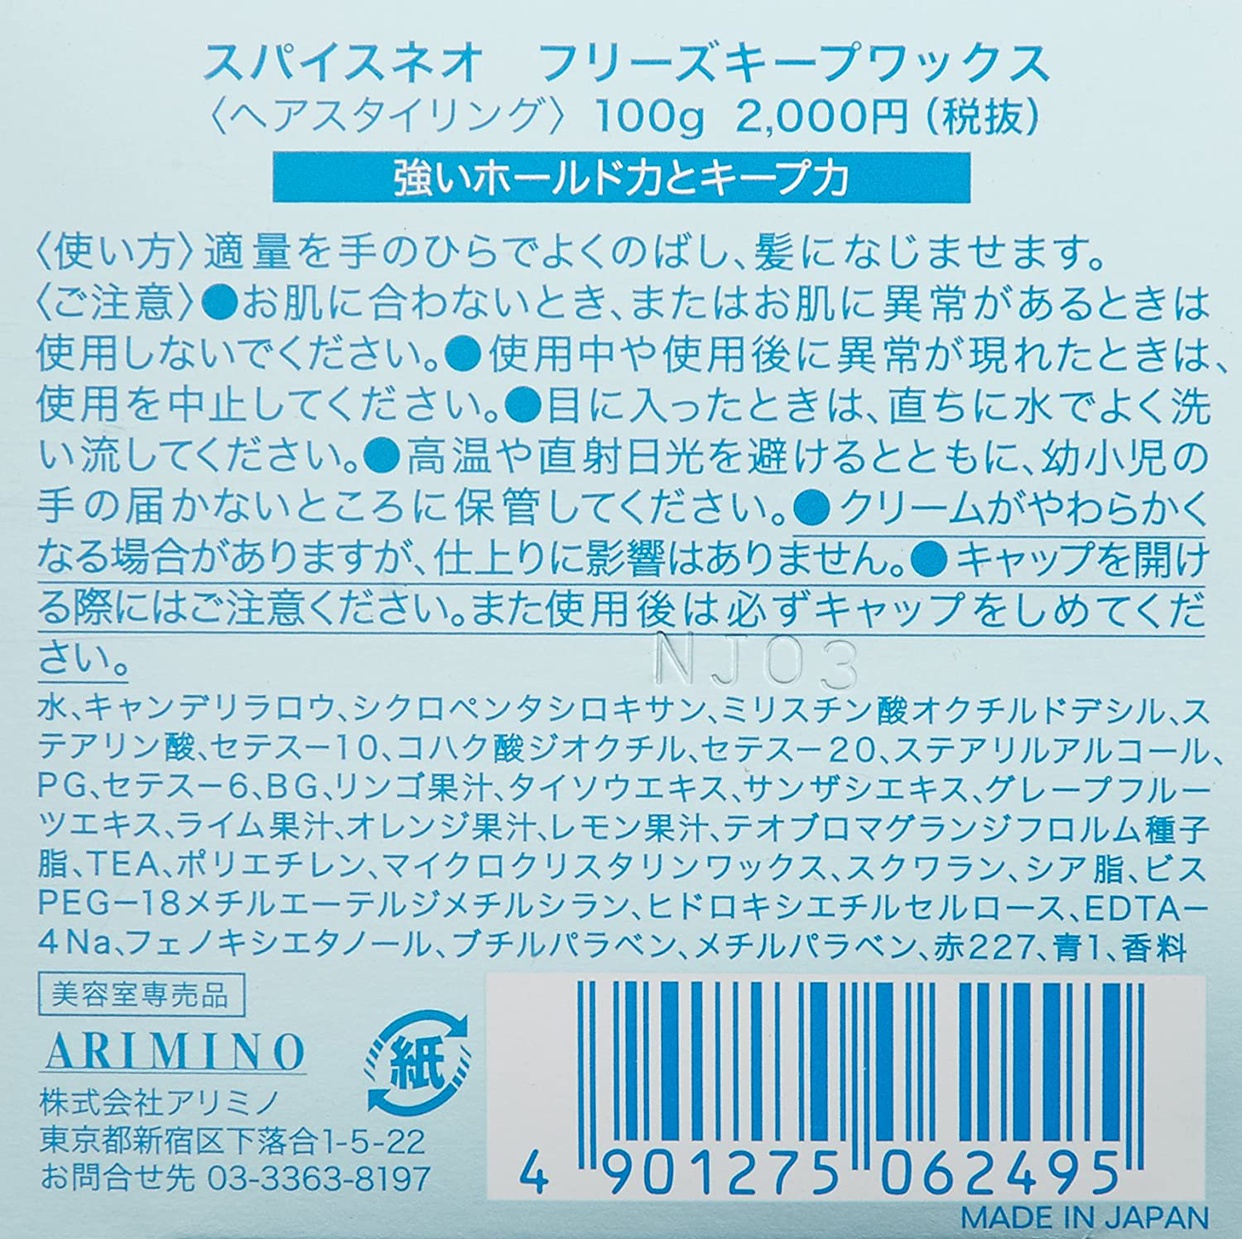 ARIMINO(アリミノ) スパイスネオ フリーズキープ ワックスの商品画像2 